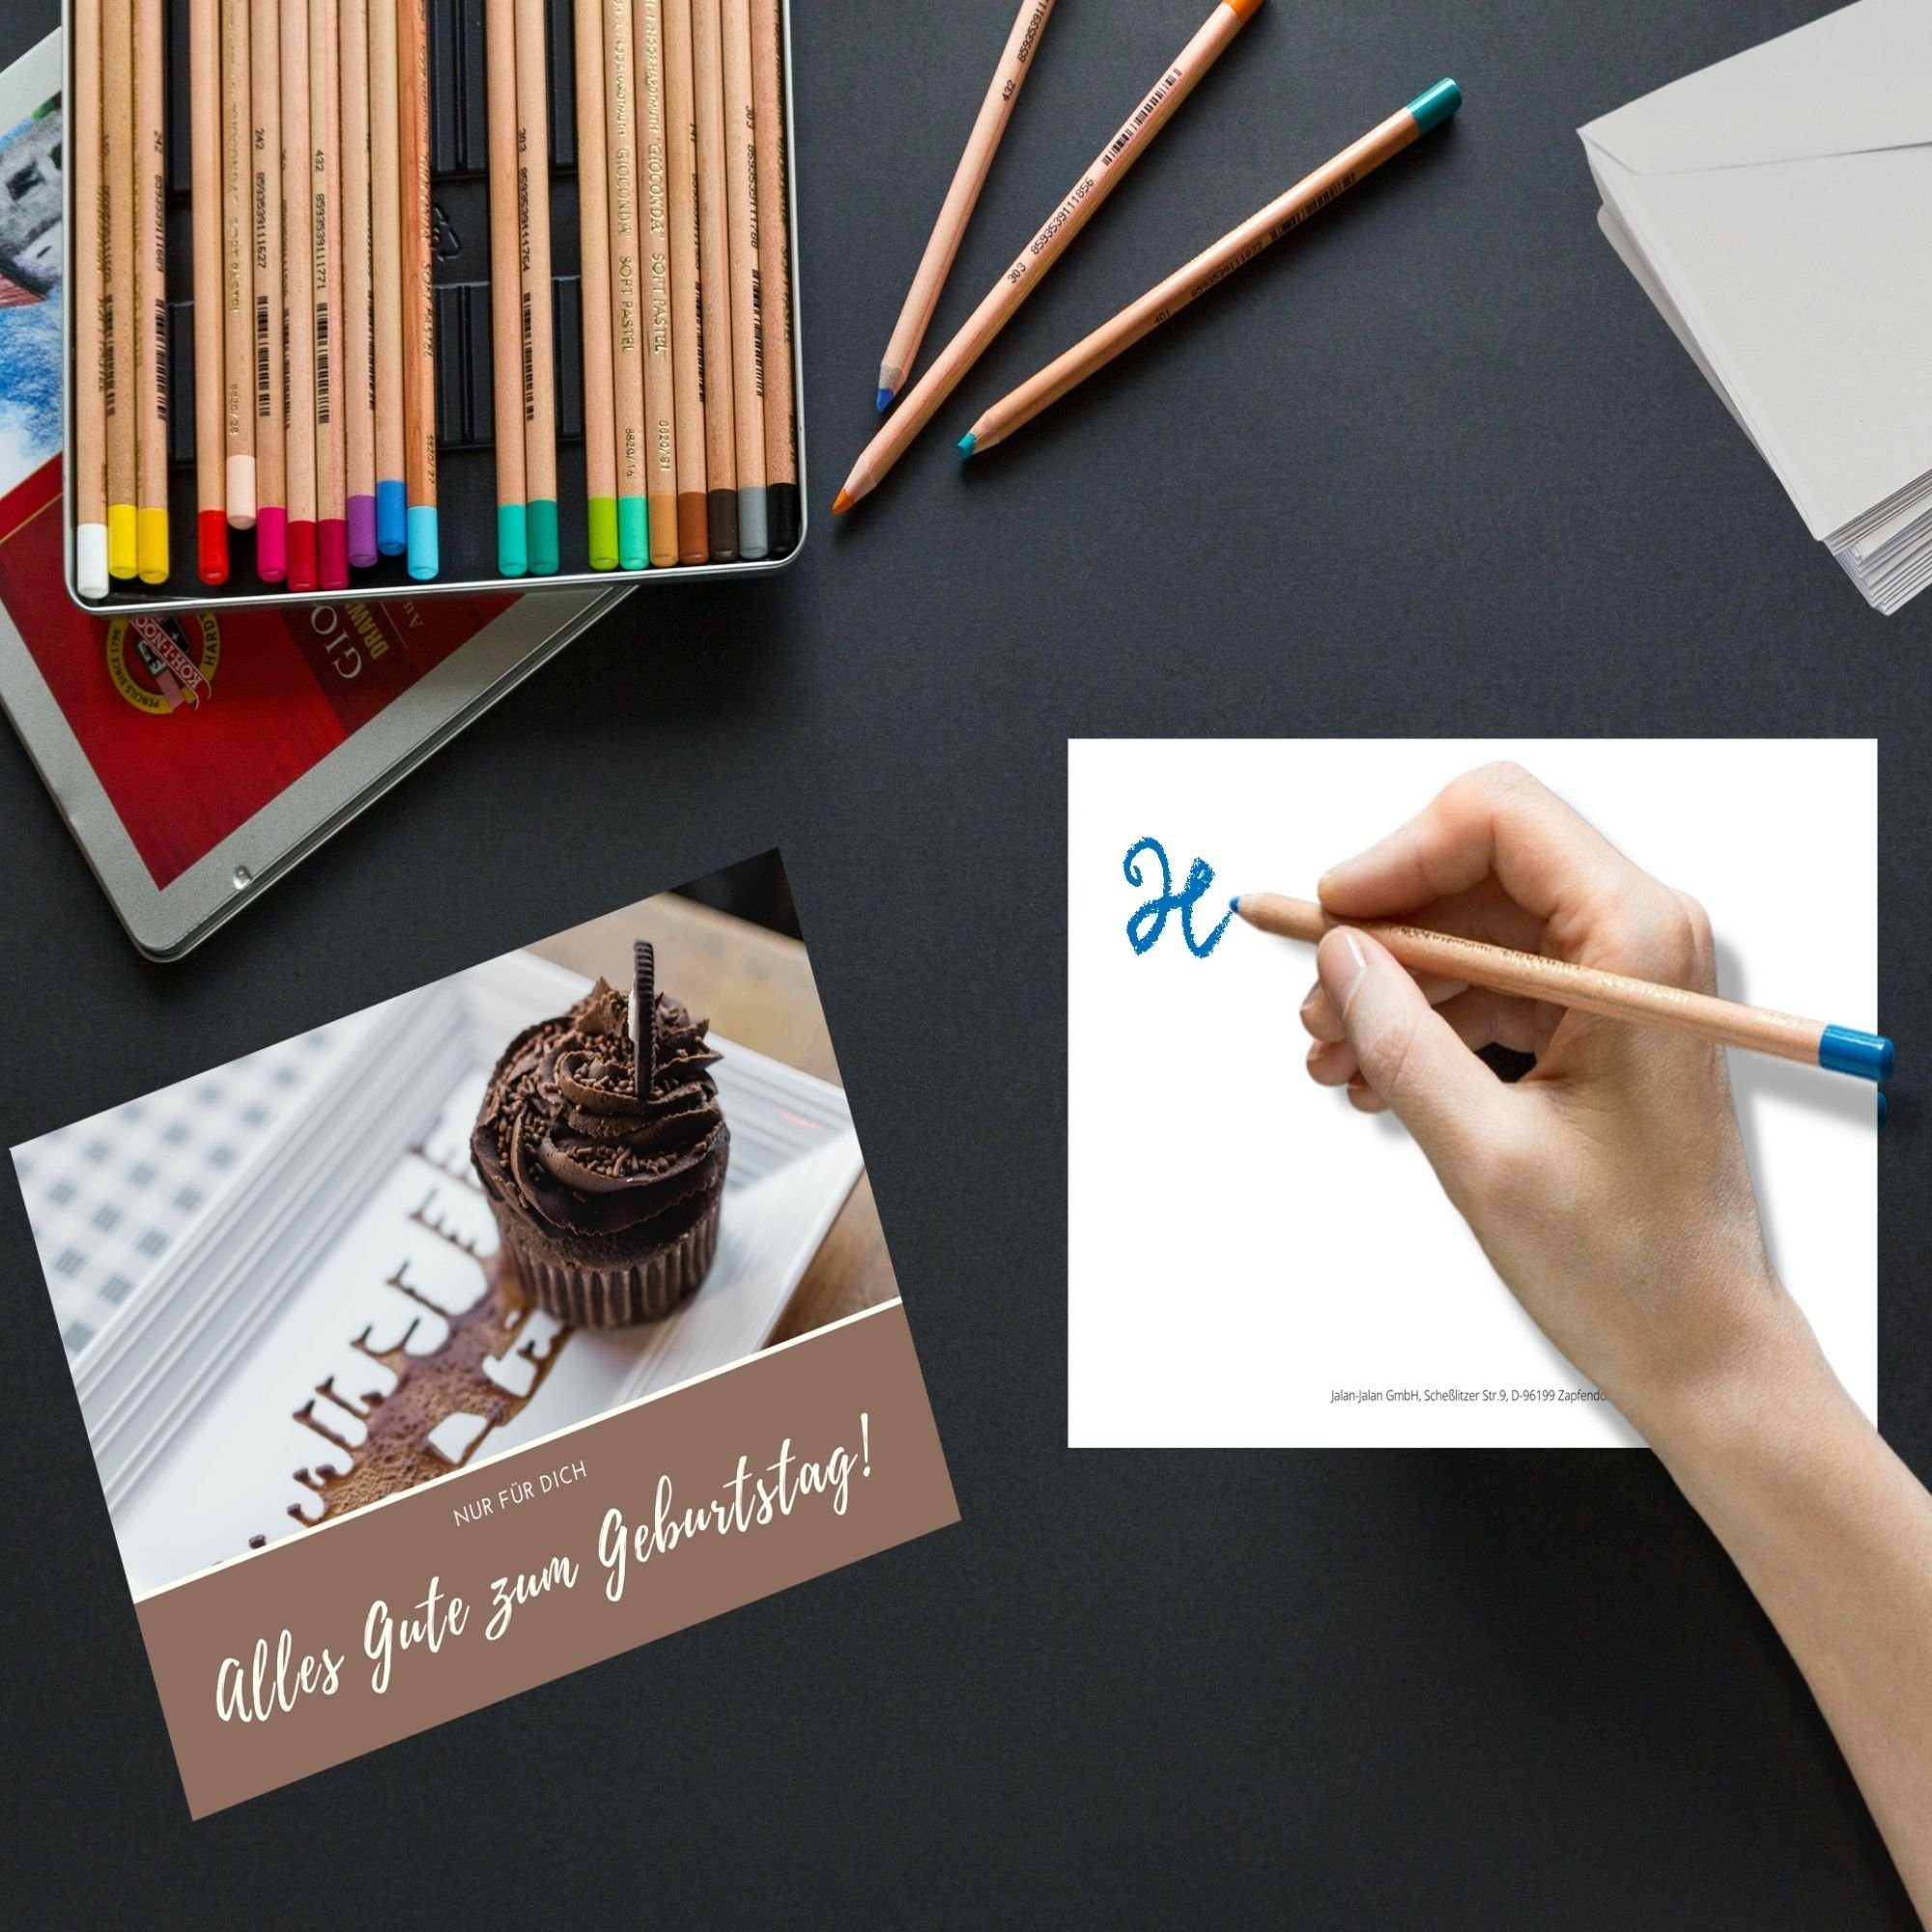 Domelo Geburtstagskarte Geburtstagskarten 15er Karten Postkarten, Kraftpapier zum Happy Grußkarten Set, Birthday Set mit Umschlag, Geburtstag 15er